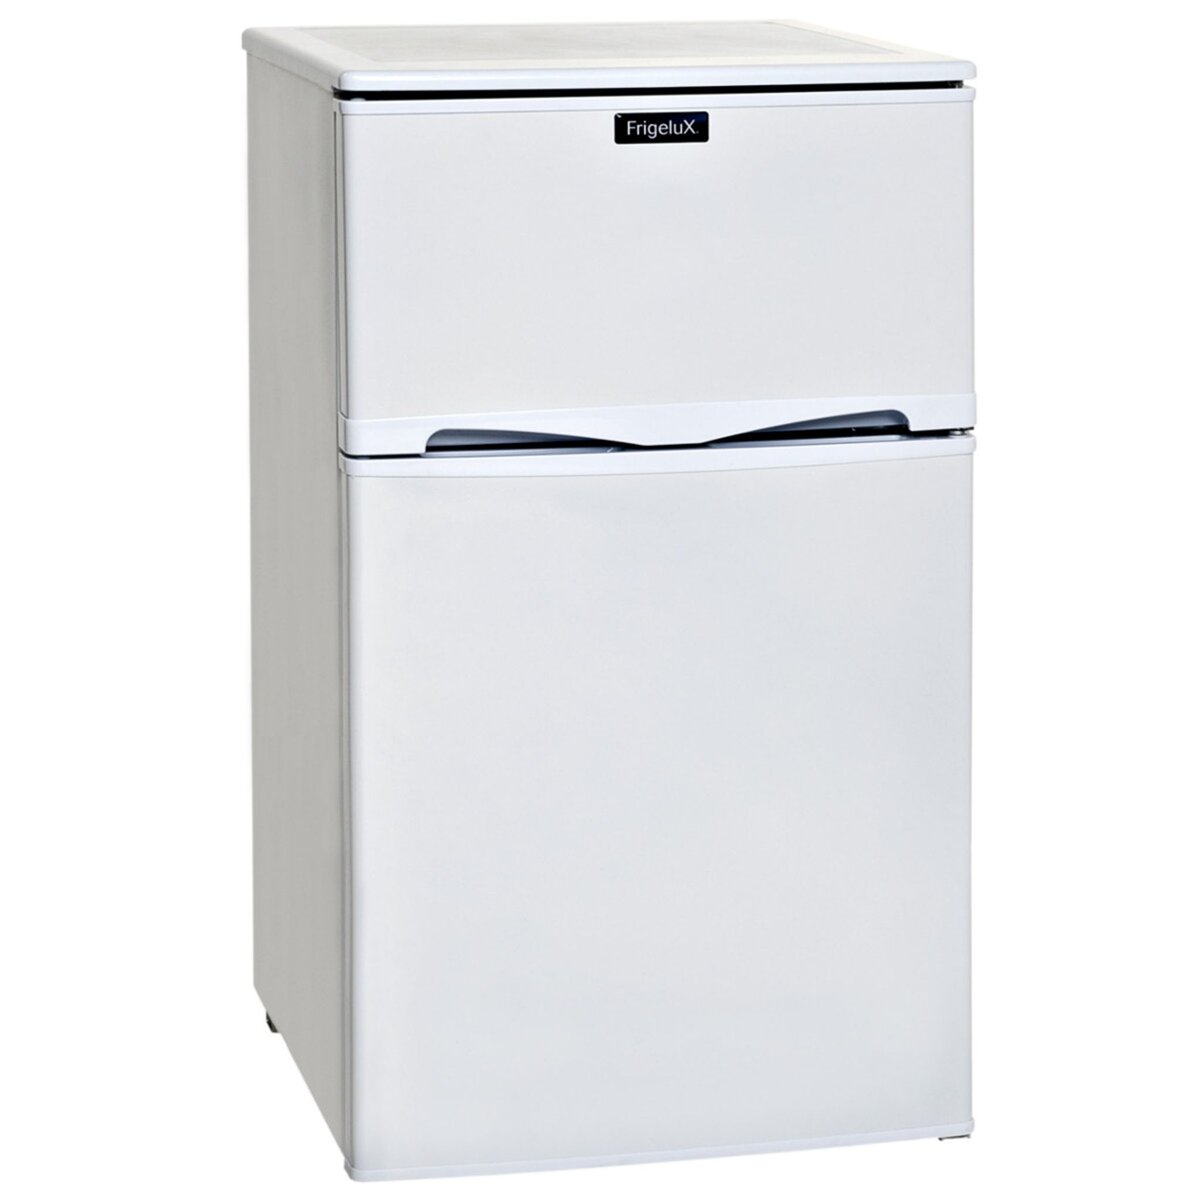 FRIGELUX Réfrigérateur 2 portes RFDP6A+, 90 L, Froid Statique